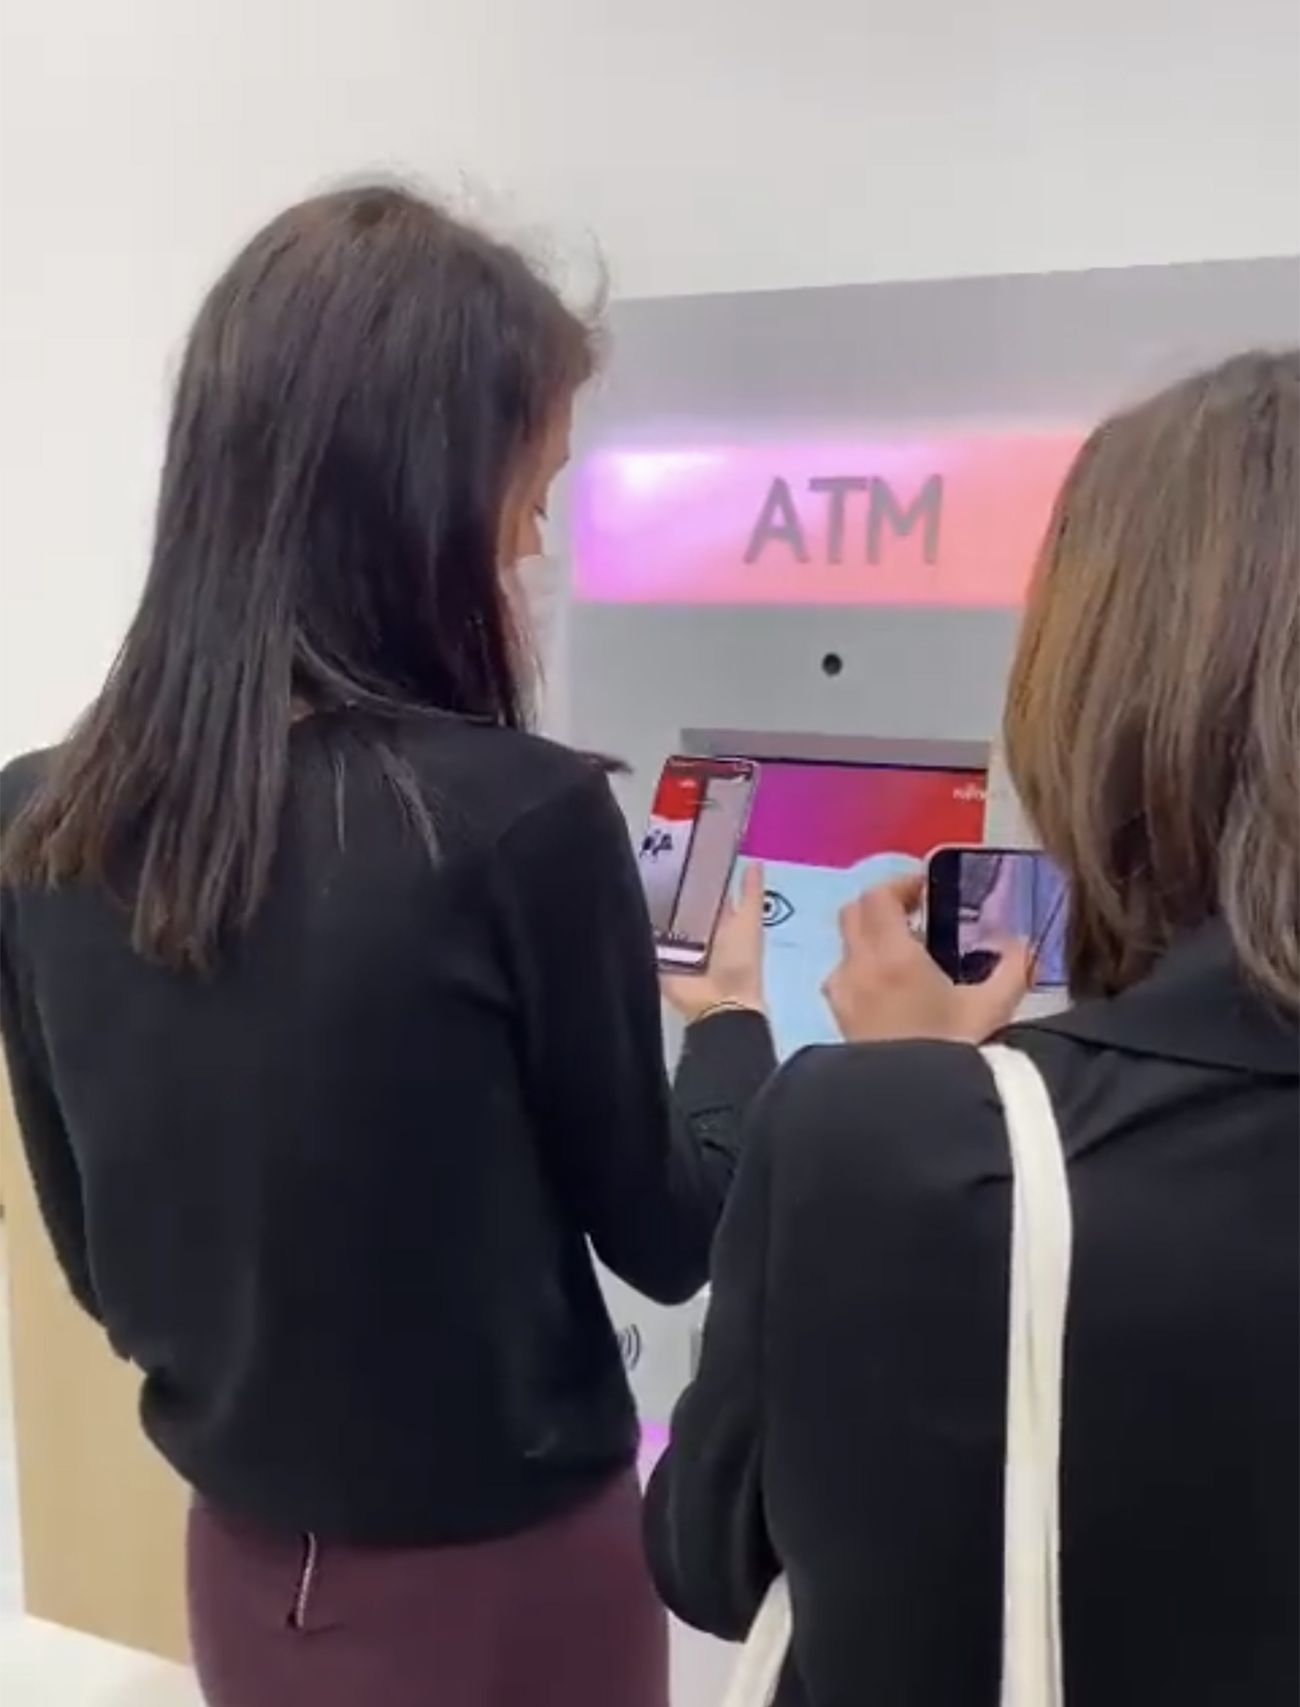 Cajeros automáticos con videoasistencia interactiva para cerrar la brecha digital de los mayores